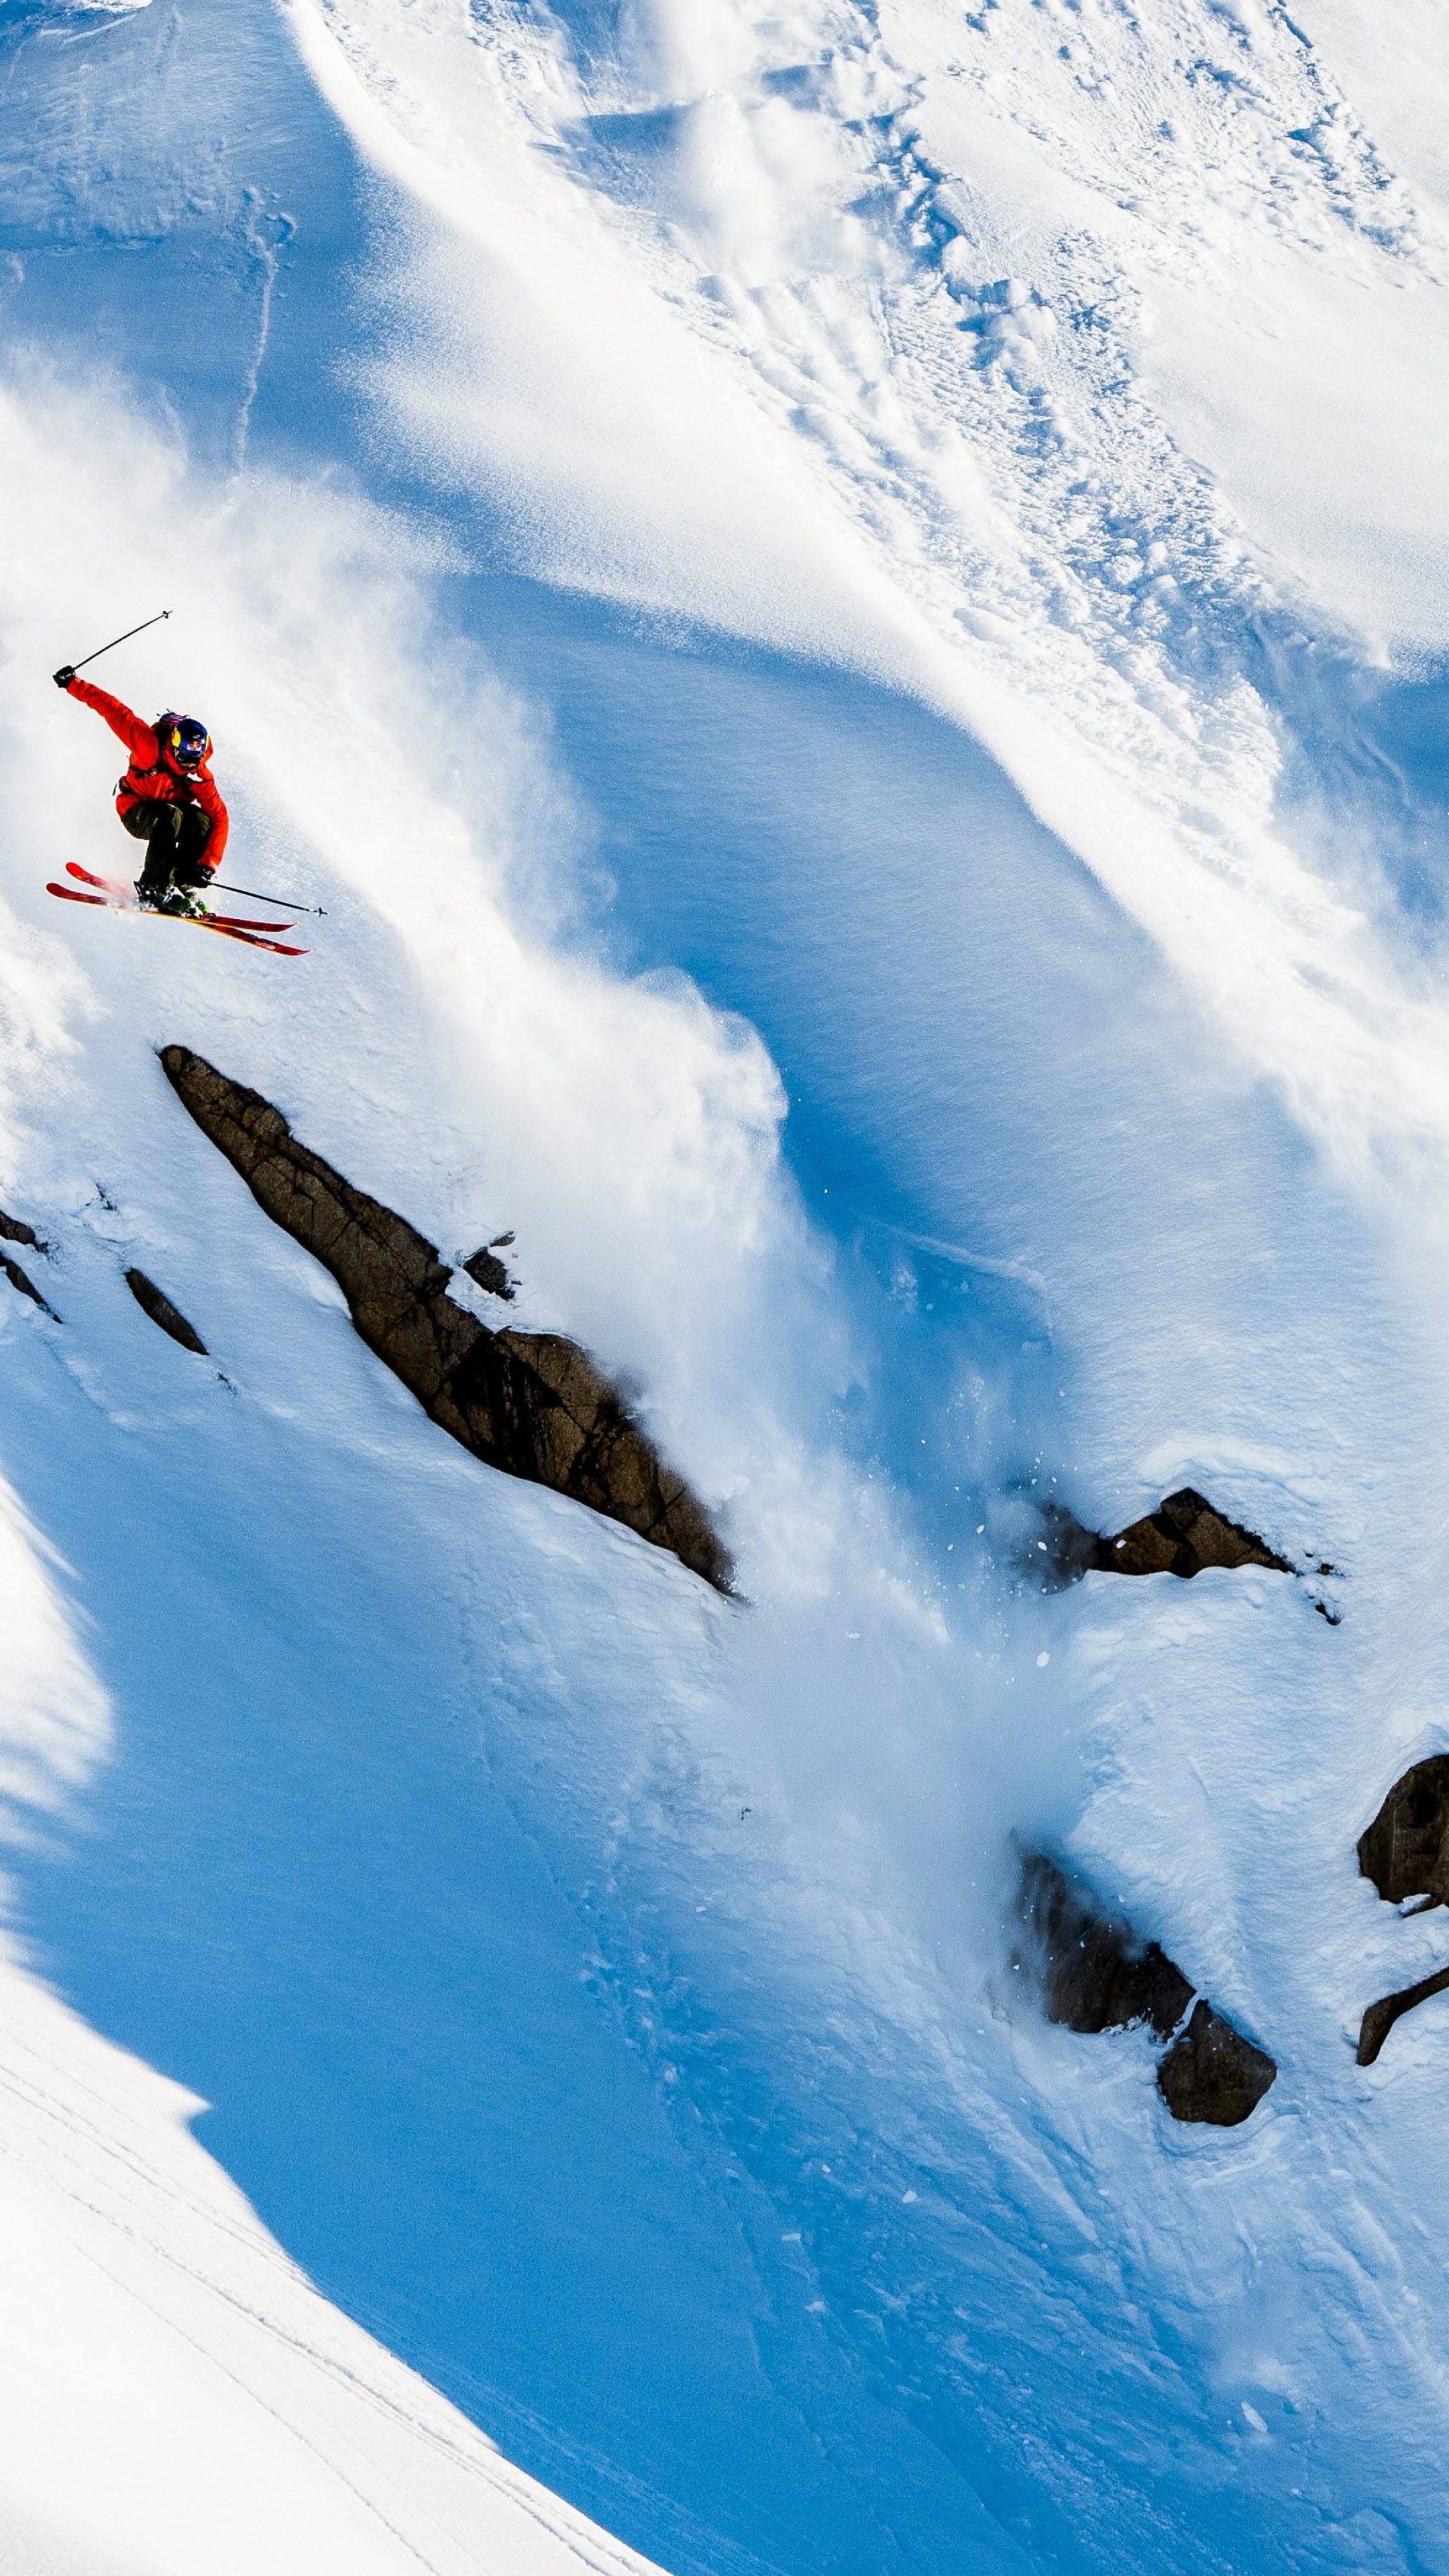 Alpine Skiing: Markus Eder, Mountains, Snow, Winter, Nature, Extreme sports. 2160x3840 4K Wallpaper.